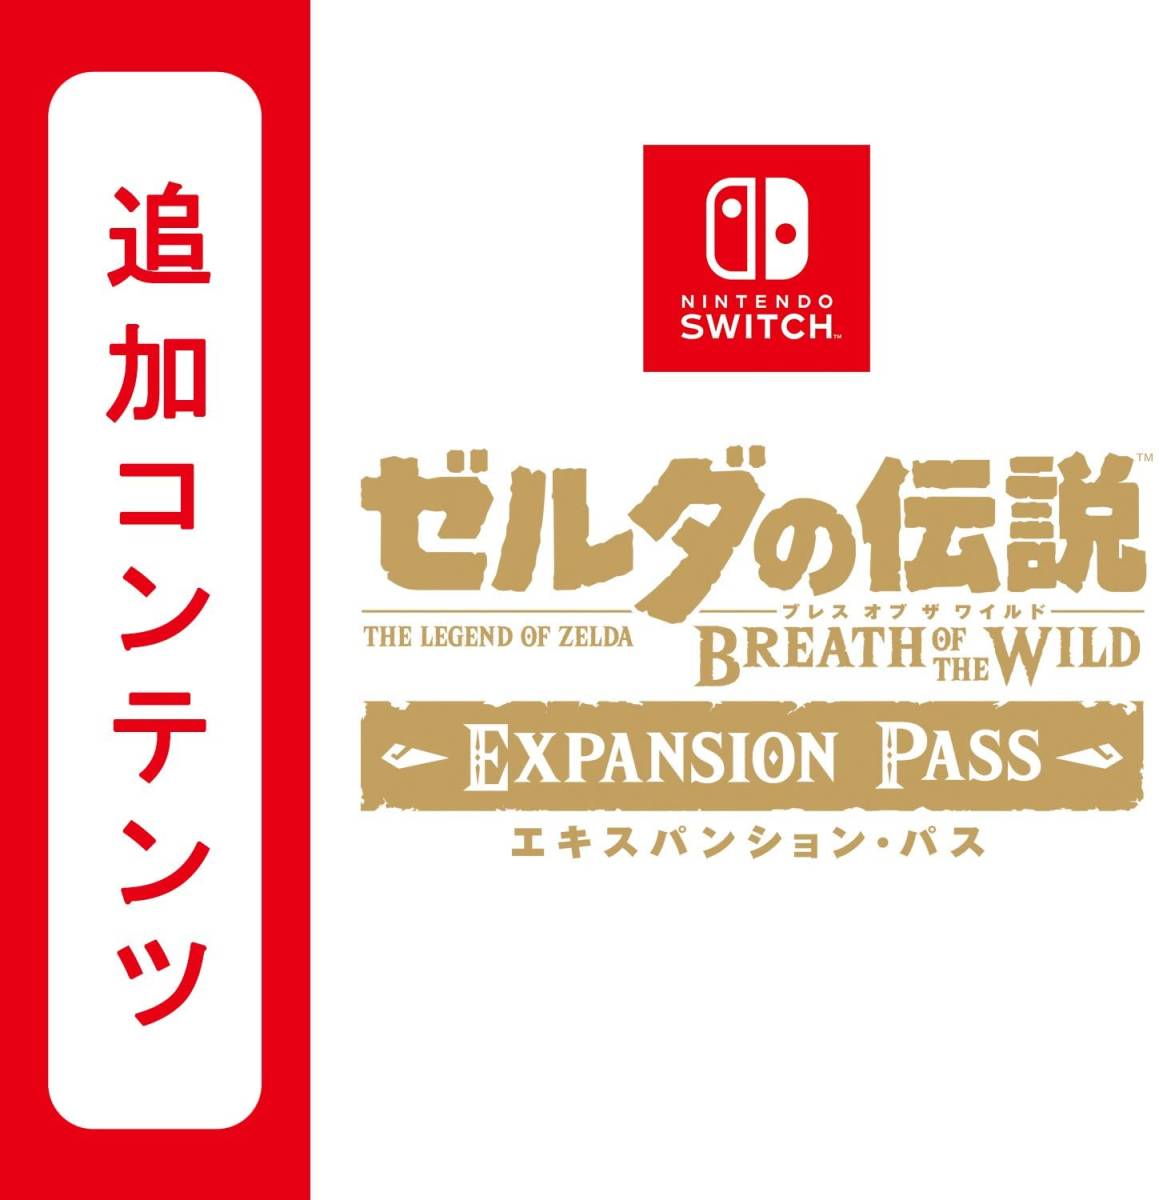 ゼルダの伝説 ブレスオブザワイルド エキスパンションパス 追加コンテンツ 任天堂 ニンテンドースイッチ コード DLC Nintendo switch 利用